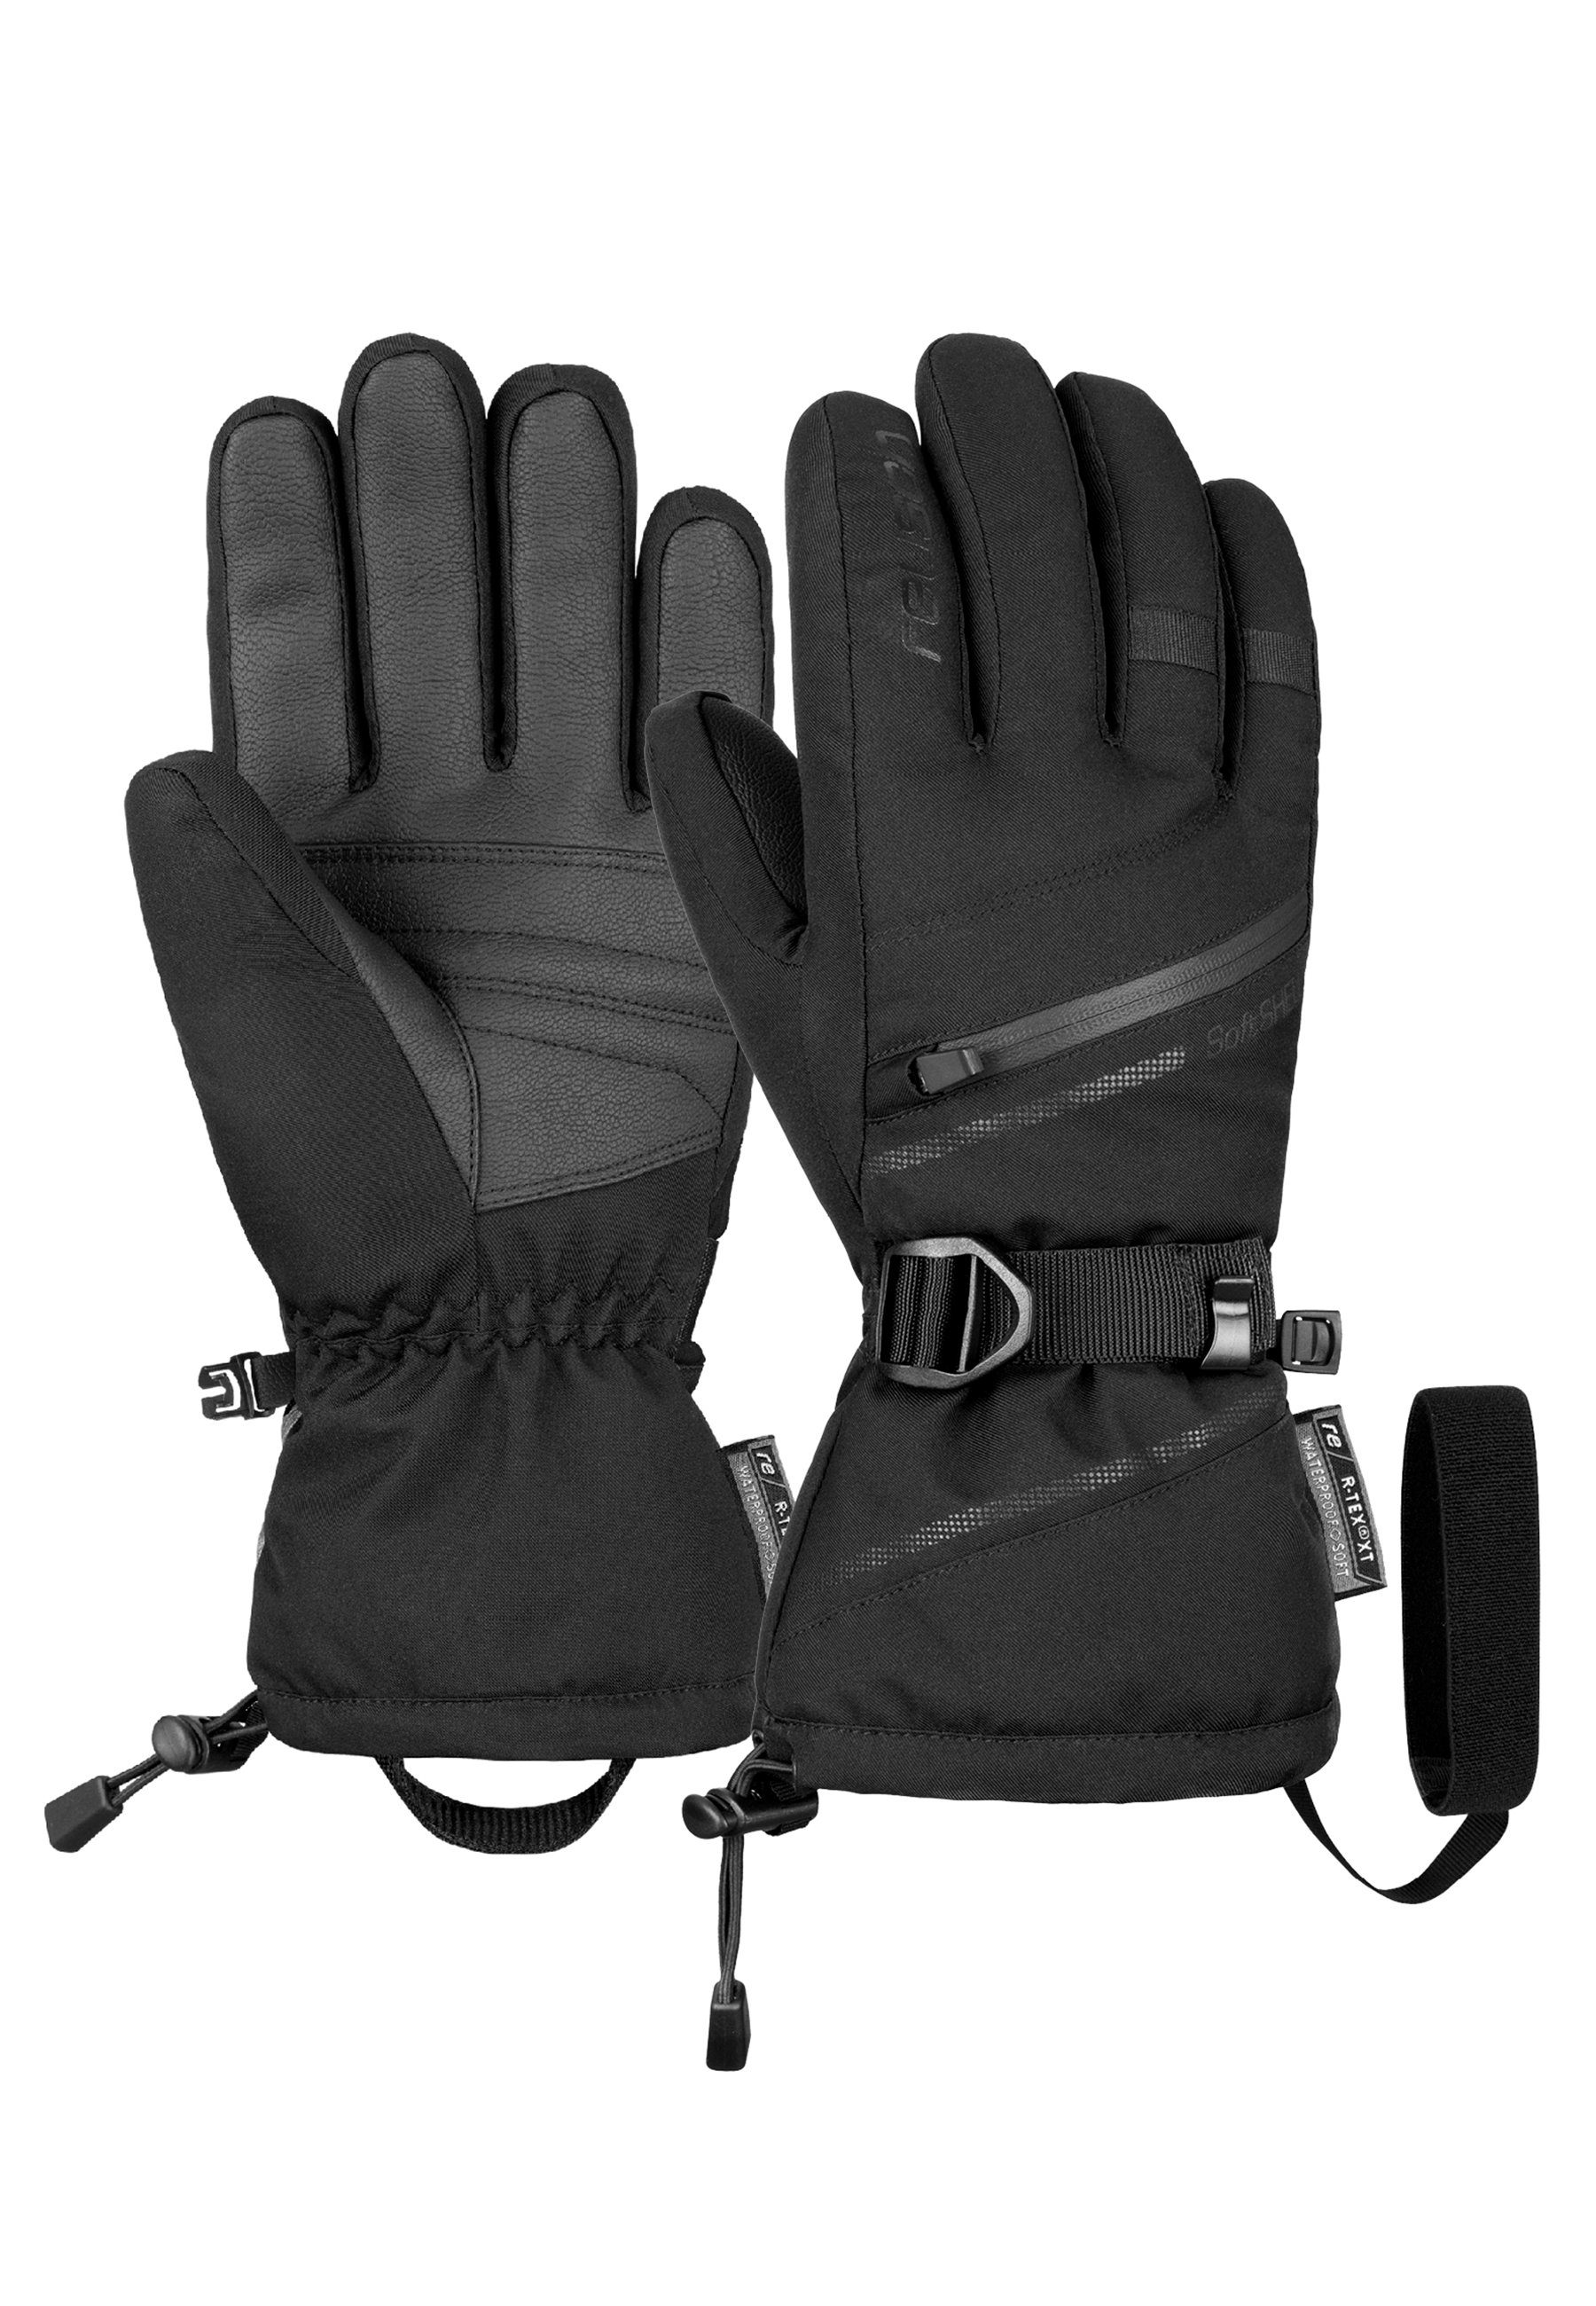 Reusch Skihandschuhe Demi R-TEX XT mit praktischer Heizkissentasche schwarz | Handschuhe